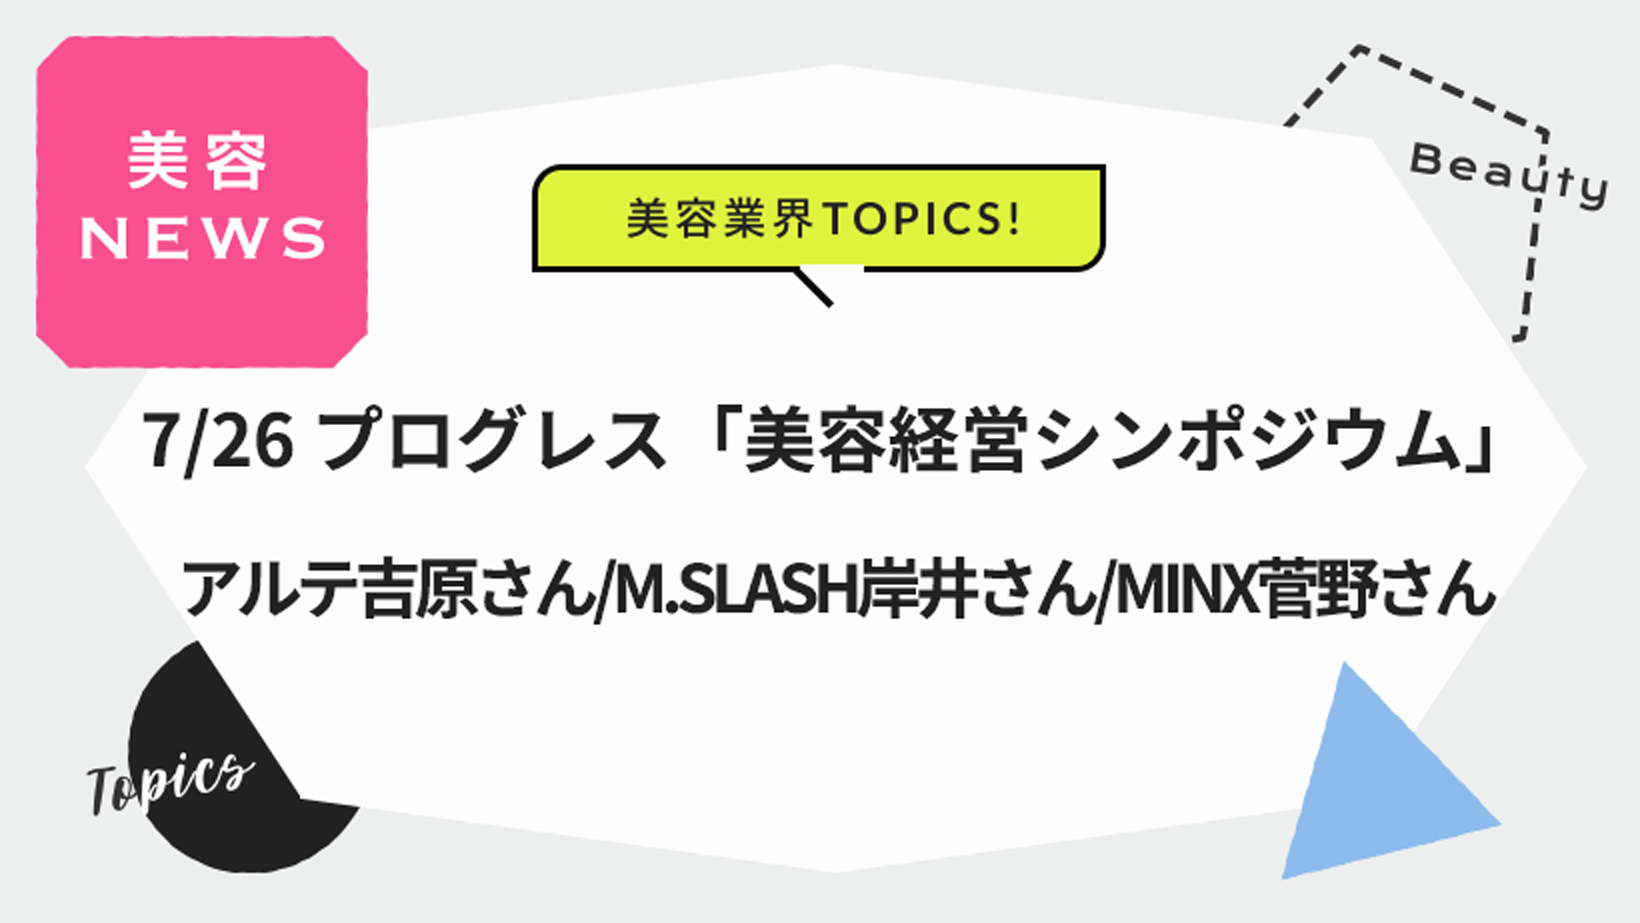 プログレス「美容経営シンポジウム」 M.SLASH 岸井さん、MINX 菅野さんらがゲスト